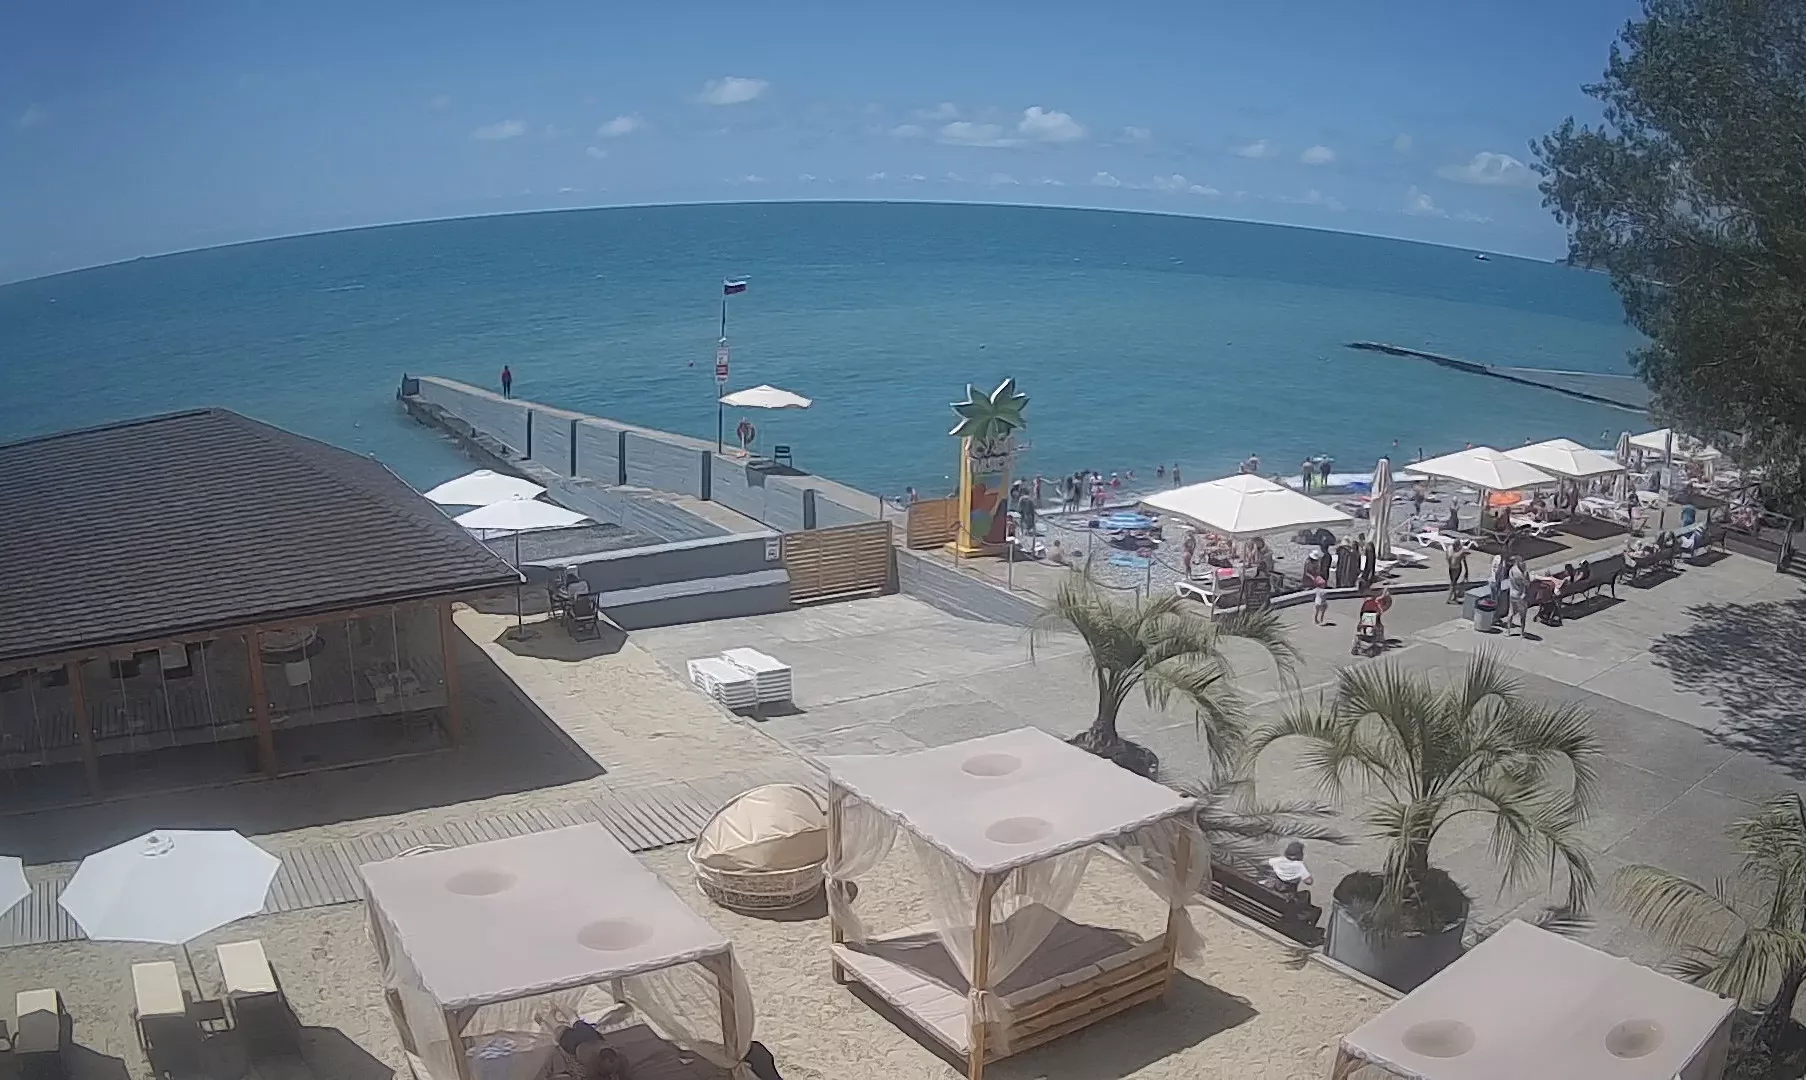 Скрытая камера на нудистском пляже - мини подборка (Любительский ролик)